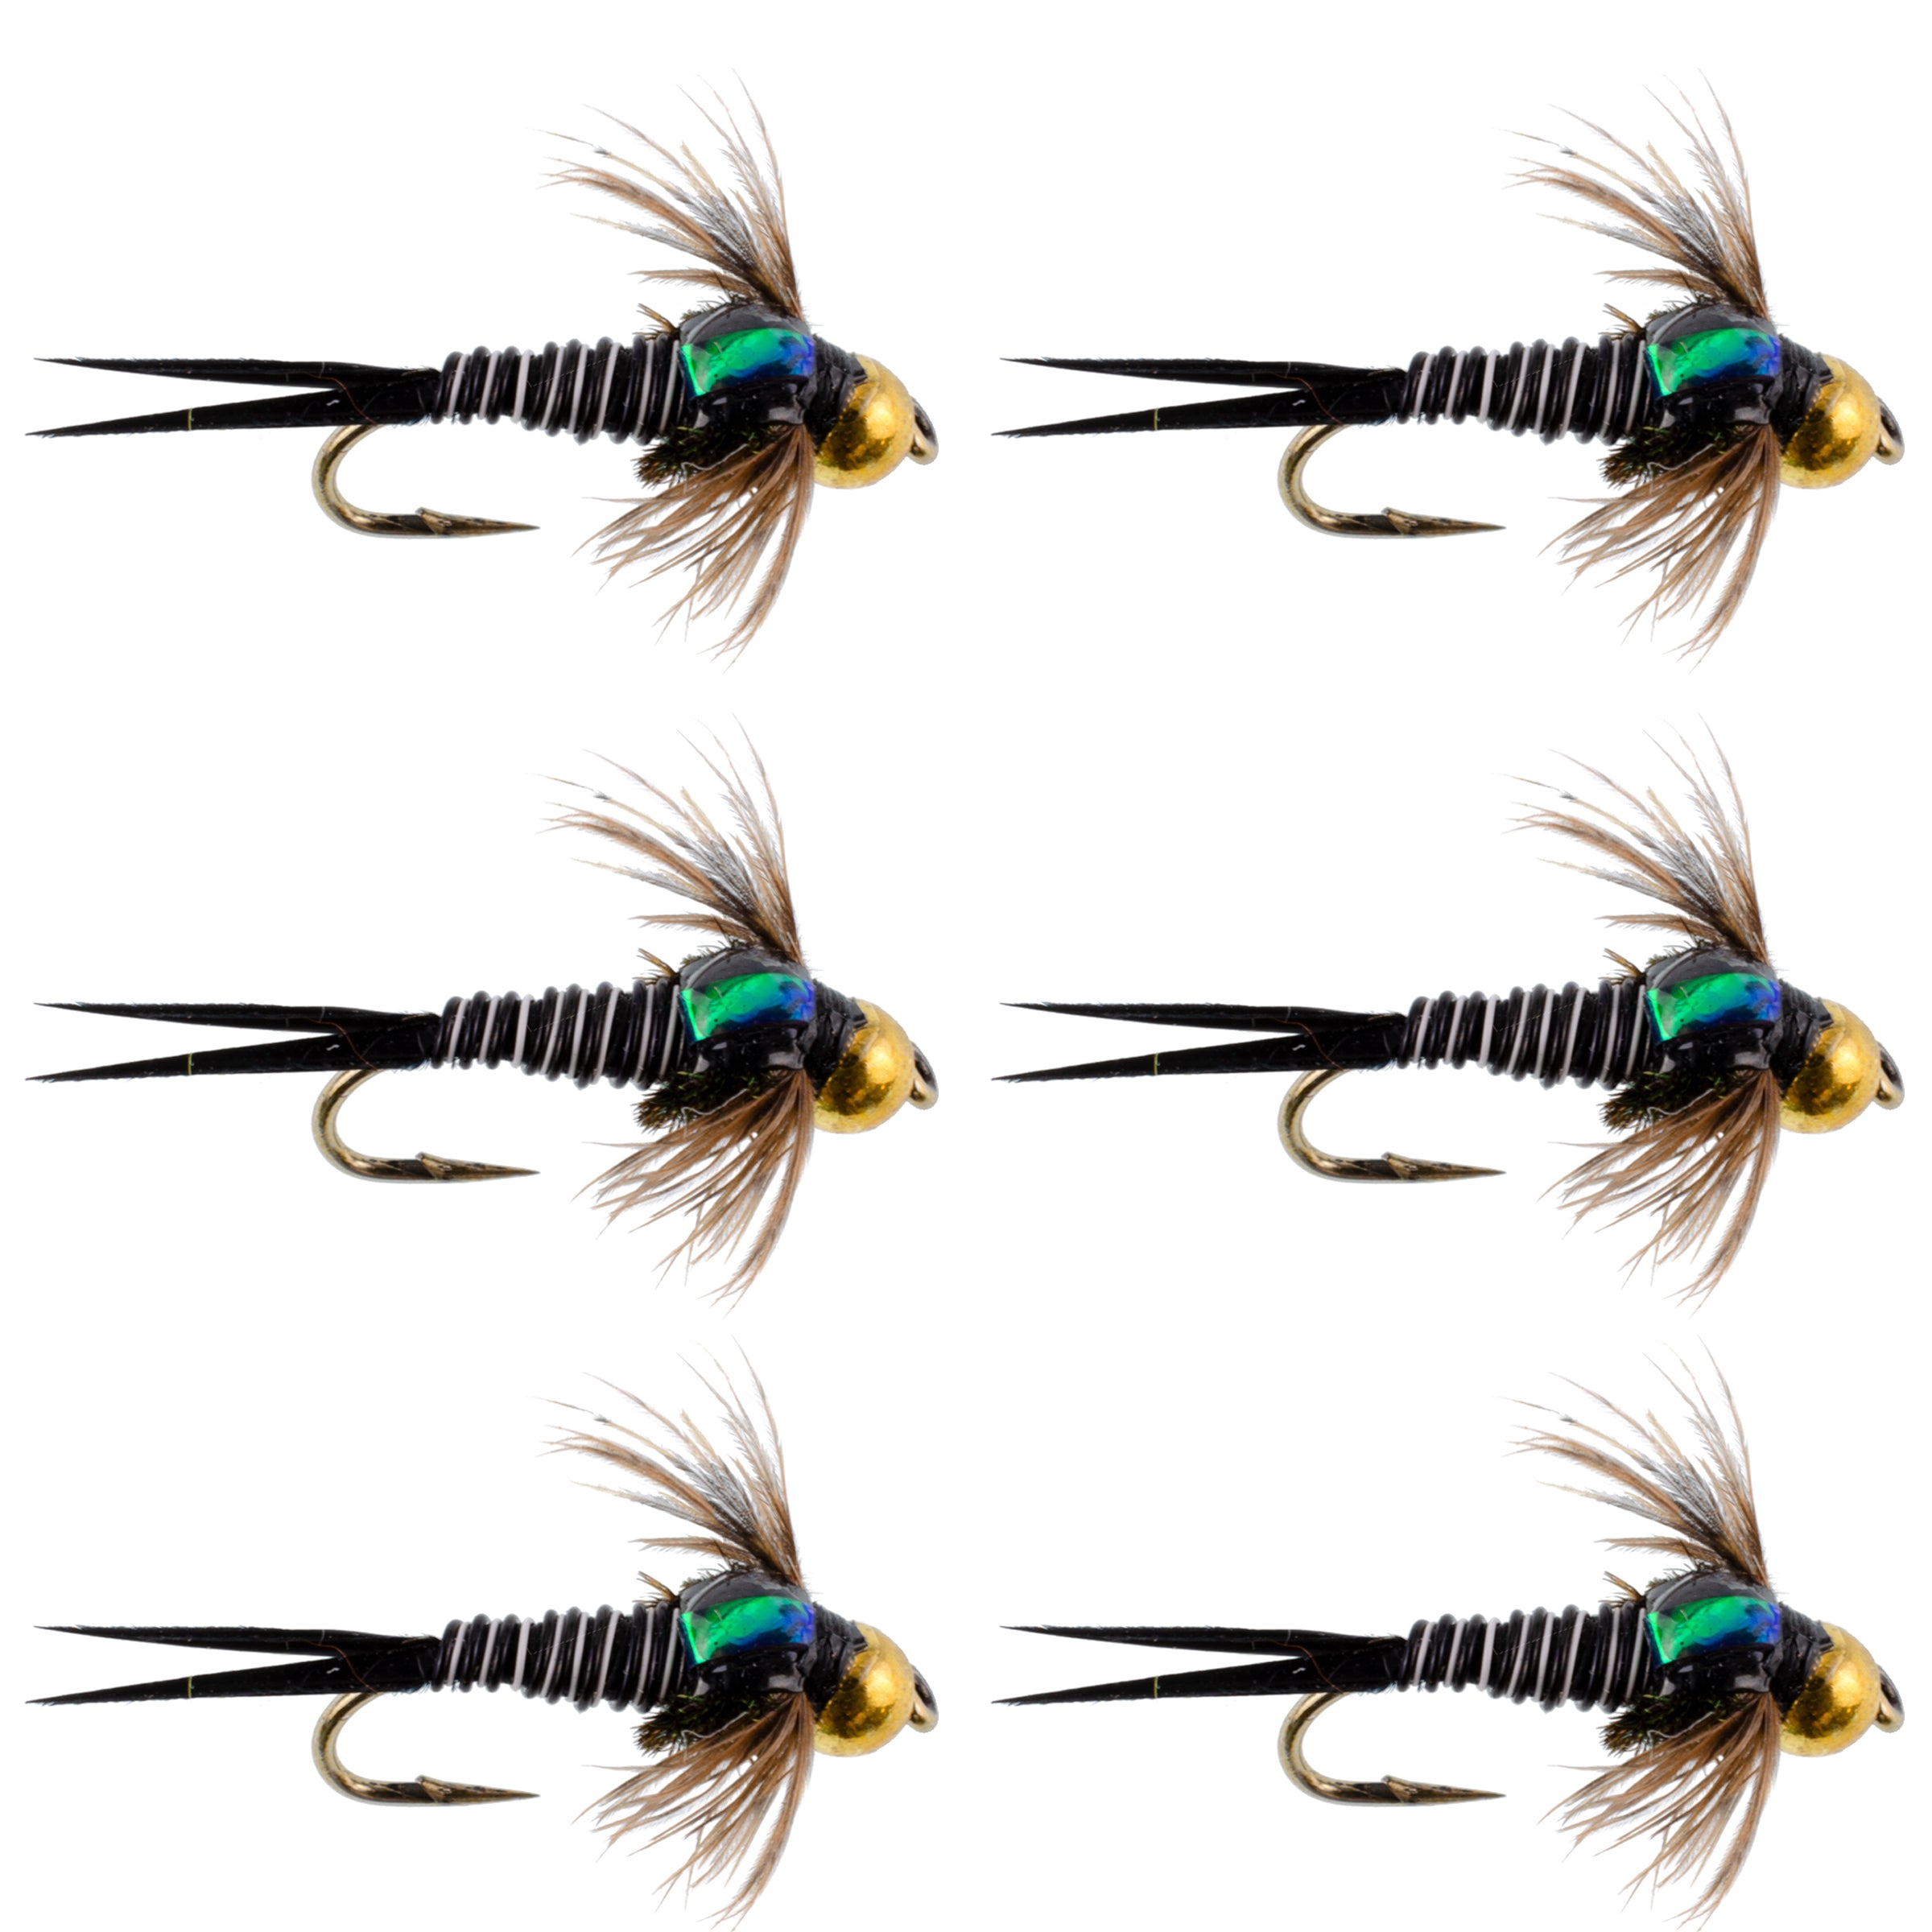 Bead Head Zebra Copper John Nymph Fly Fishing Flies - Set of 6 Flies Hook Size 14